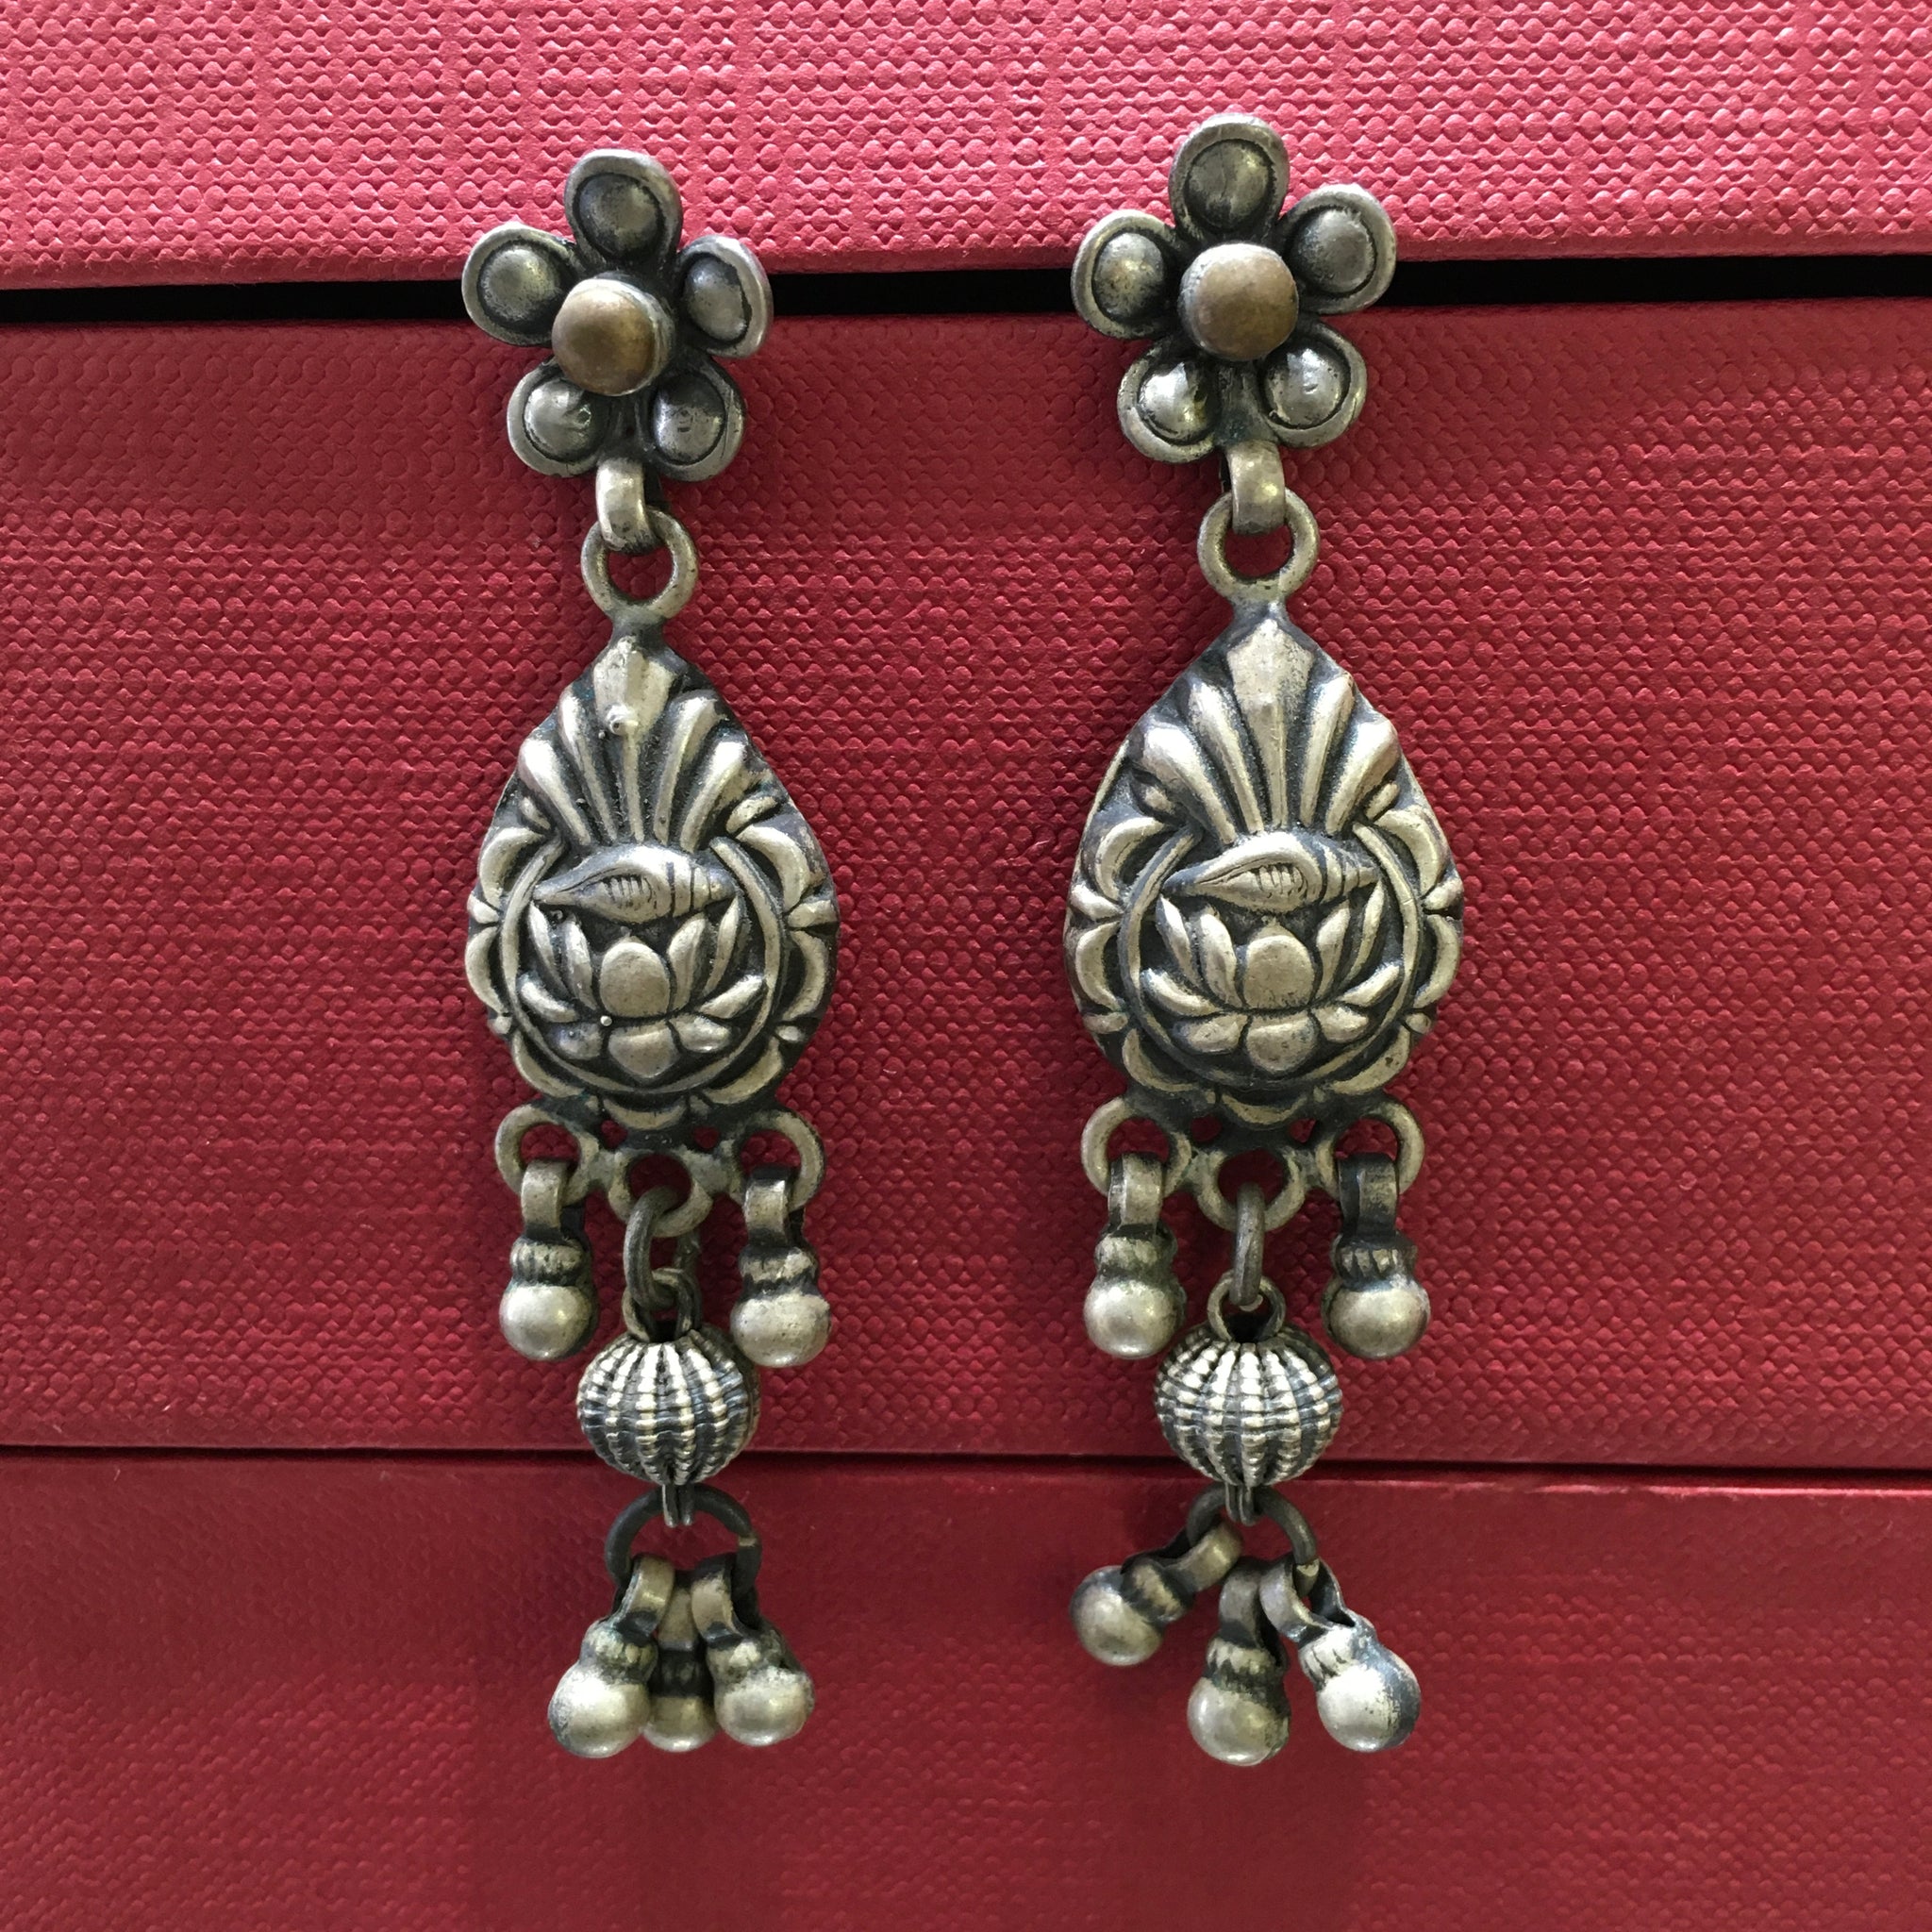 Black Silver Earring - Dazzles Jewellery